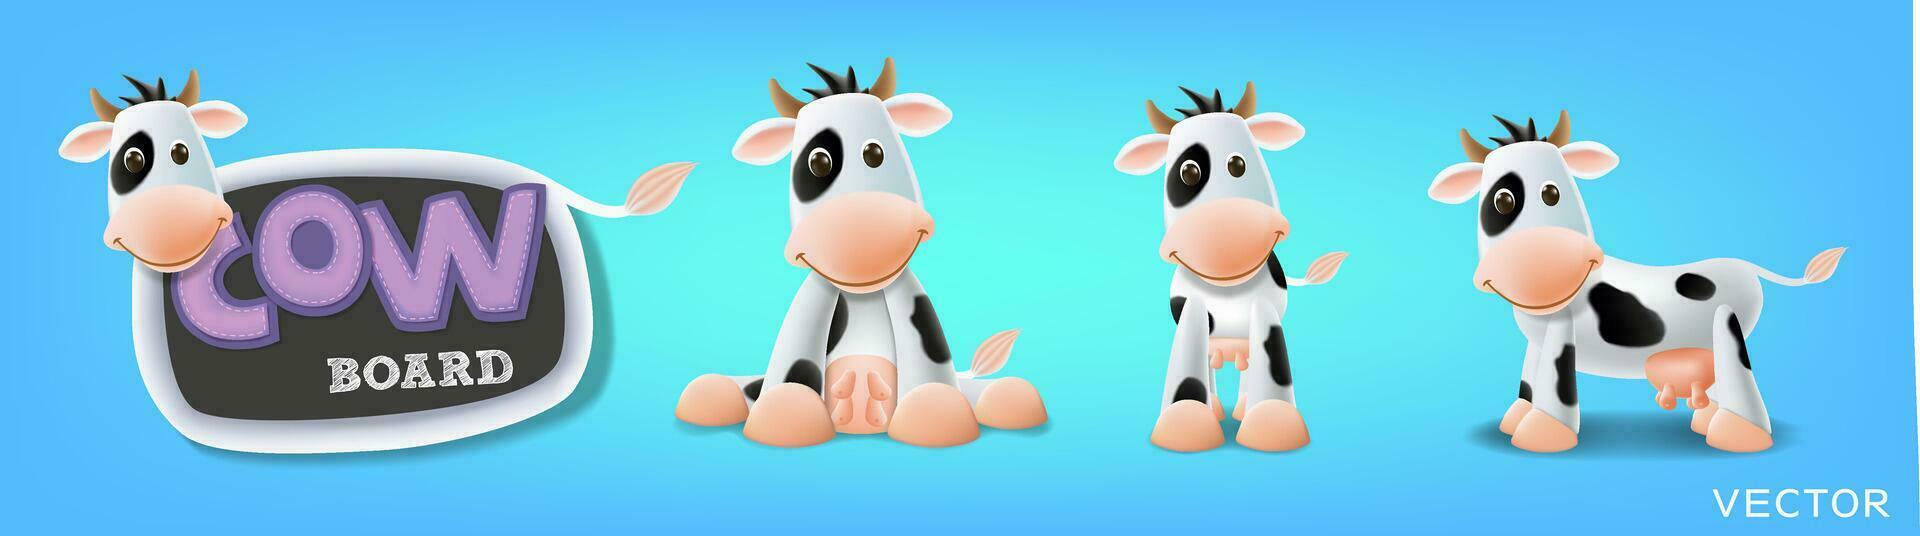 leite vaca borda definir, vaca quadro-negro, de pé, sentado e diferente poses vetor ilustração